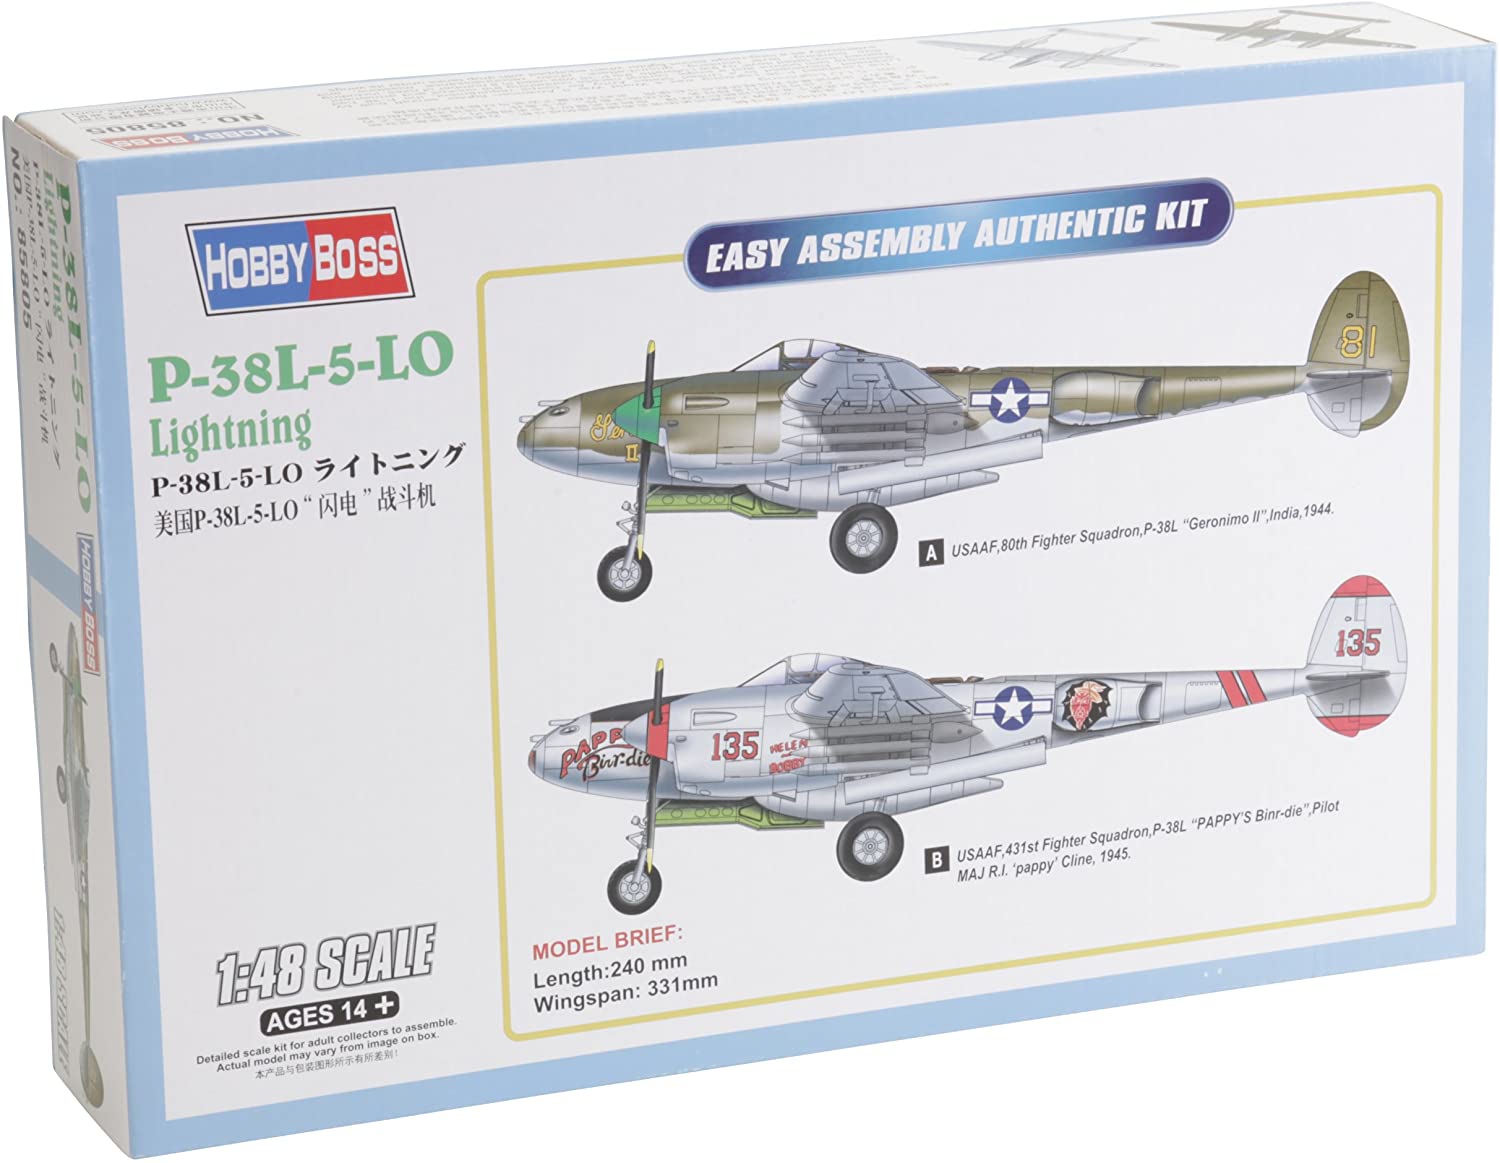 ホビーボス 1/48 エアクラフトシリーズ P-38L-5-LO ライトニング プラモデル